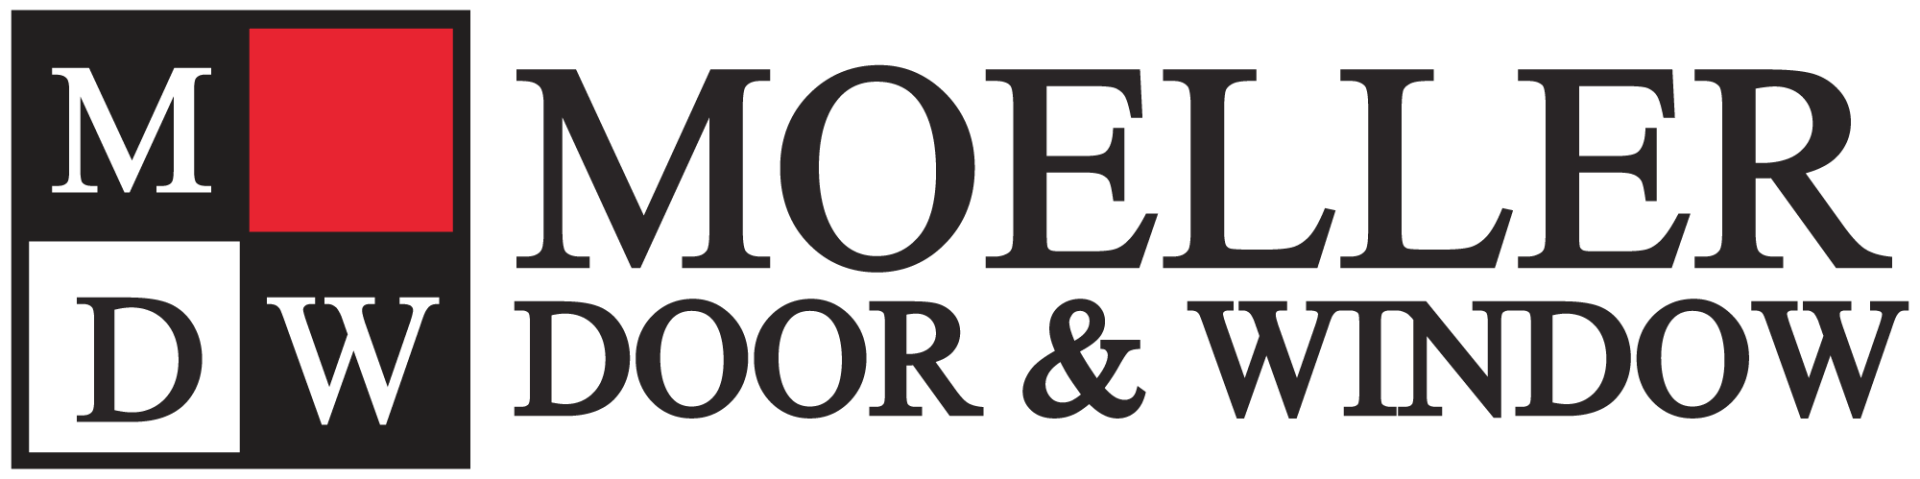 Moeller Door and Window logo